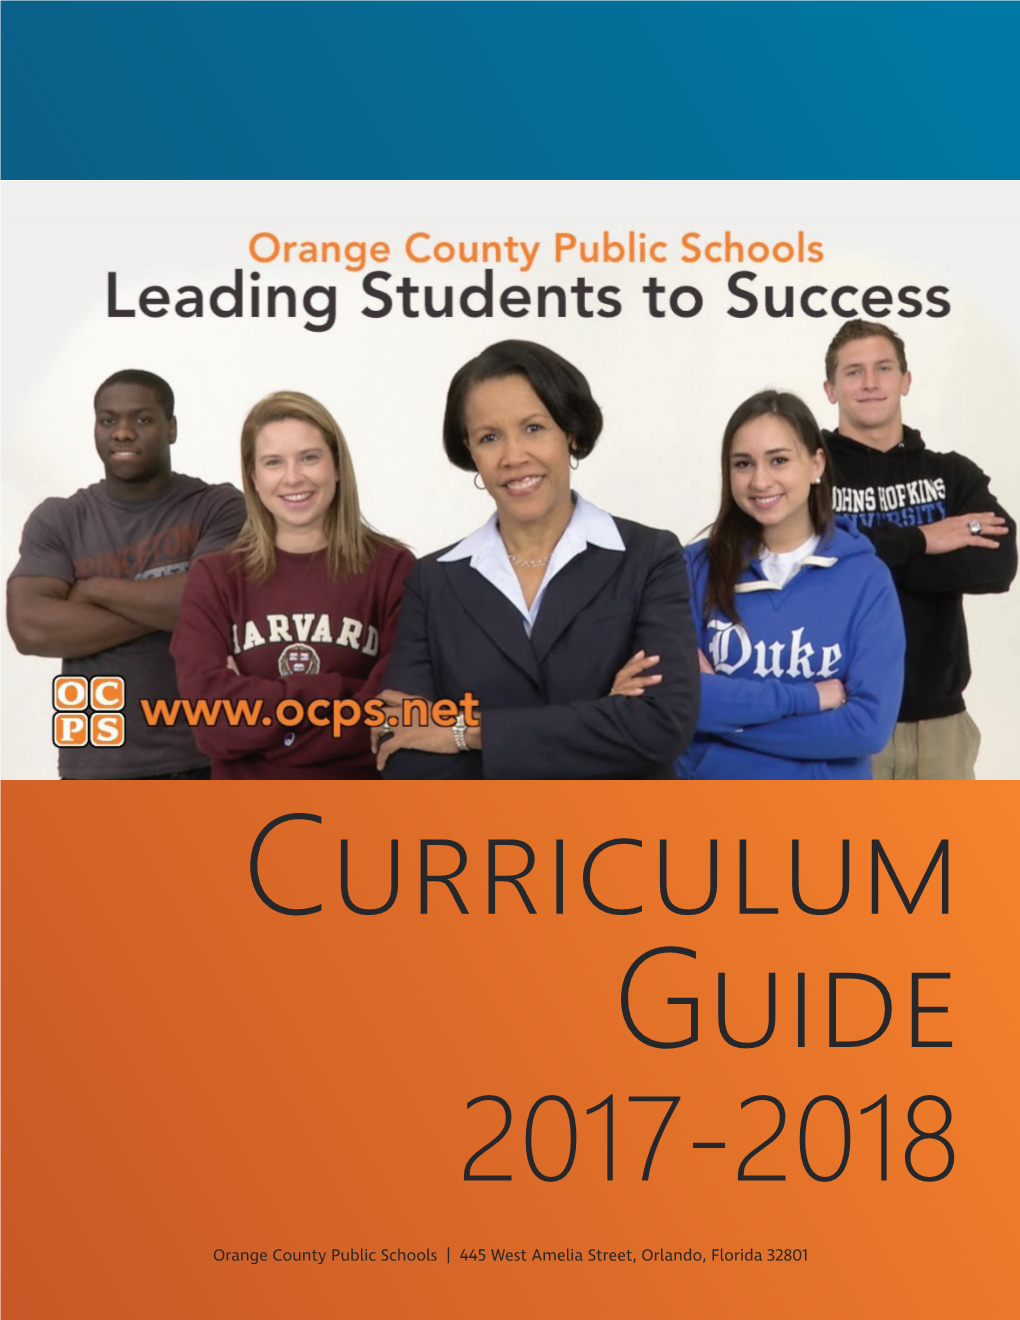 Curriculum Guide 2017-2018